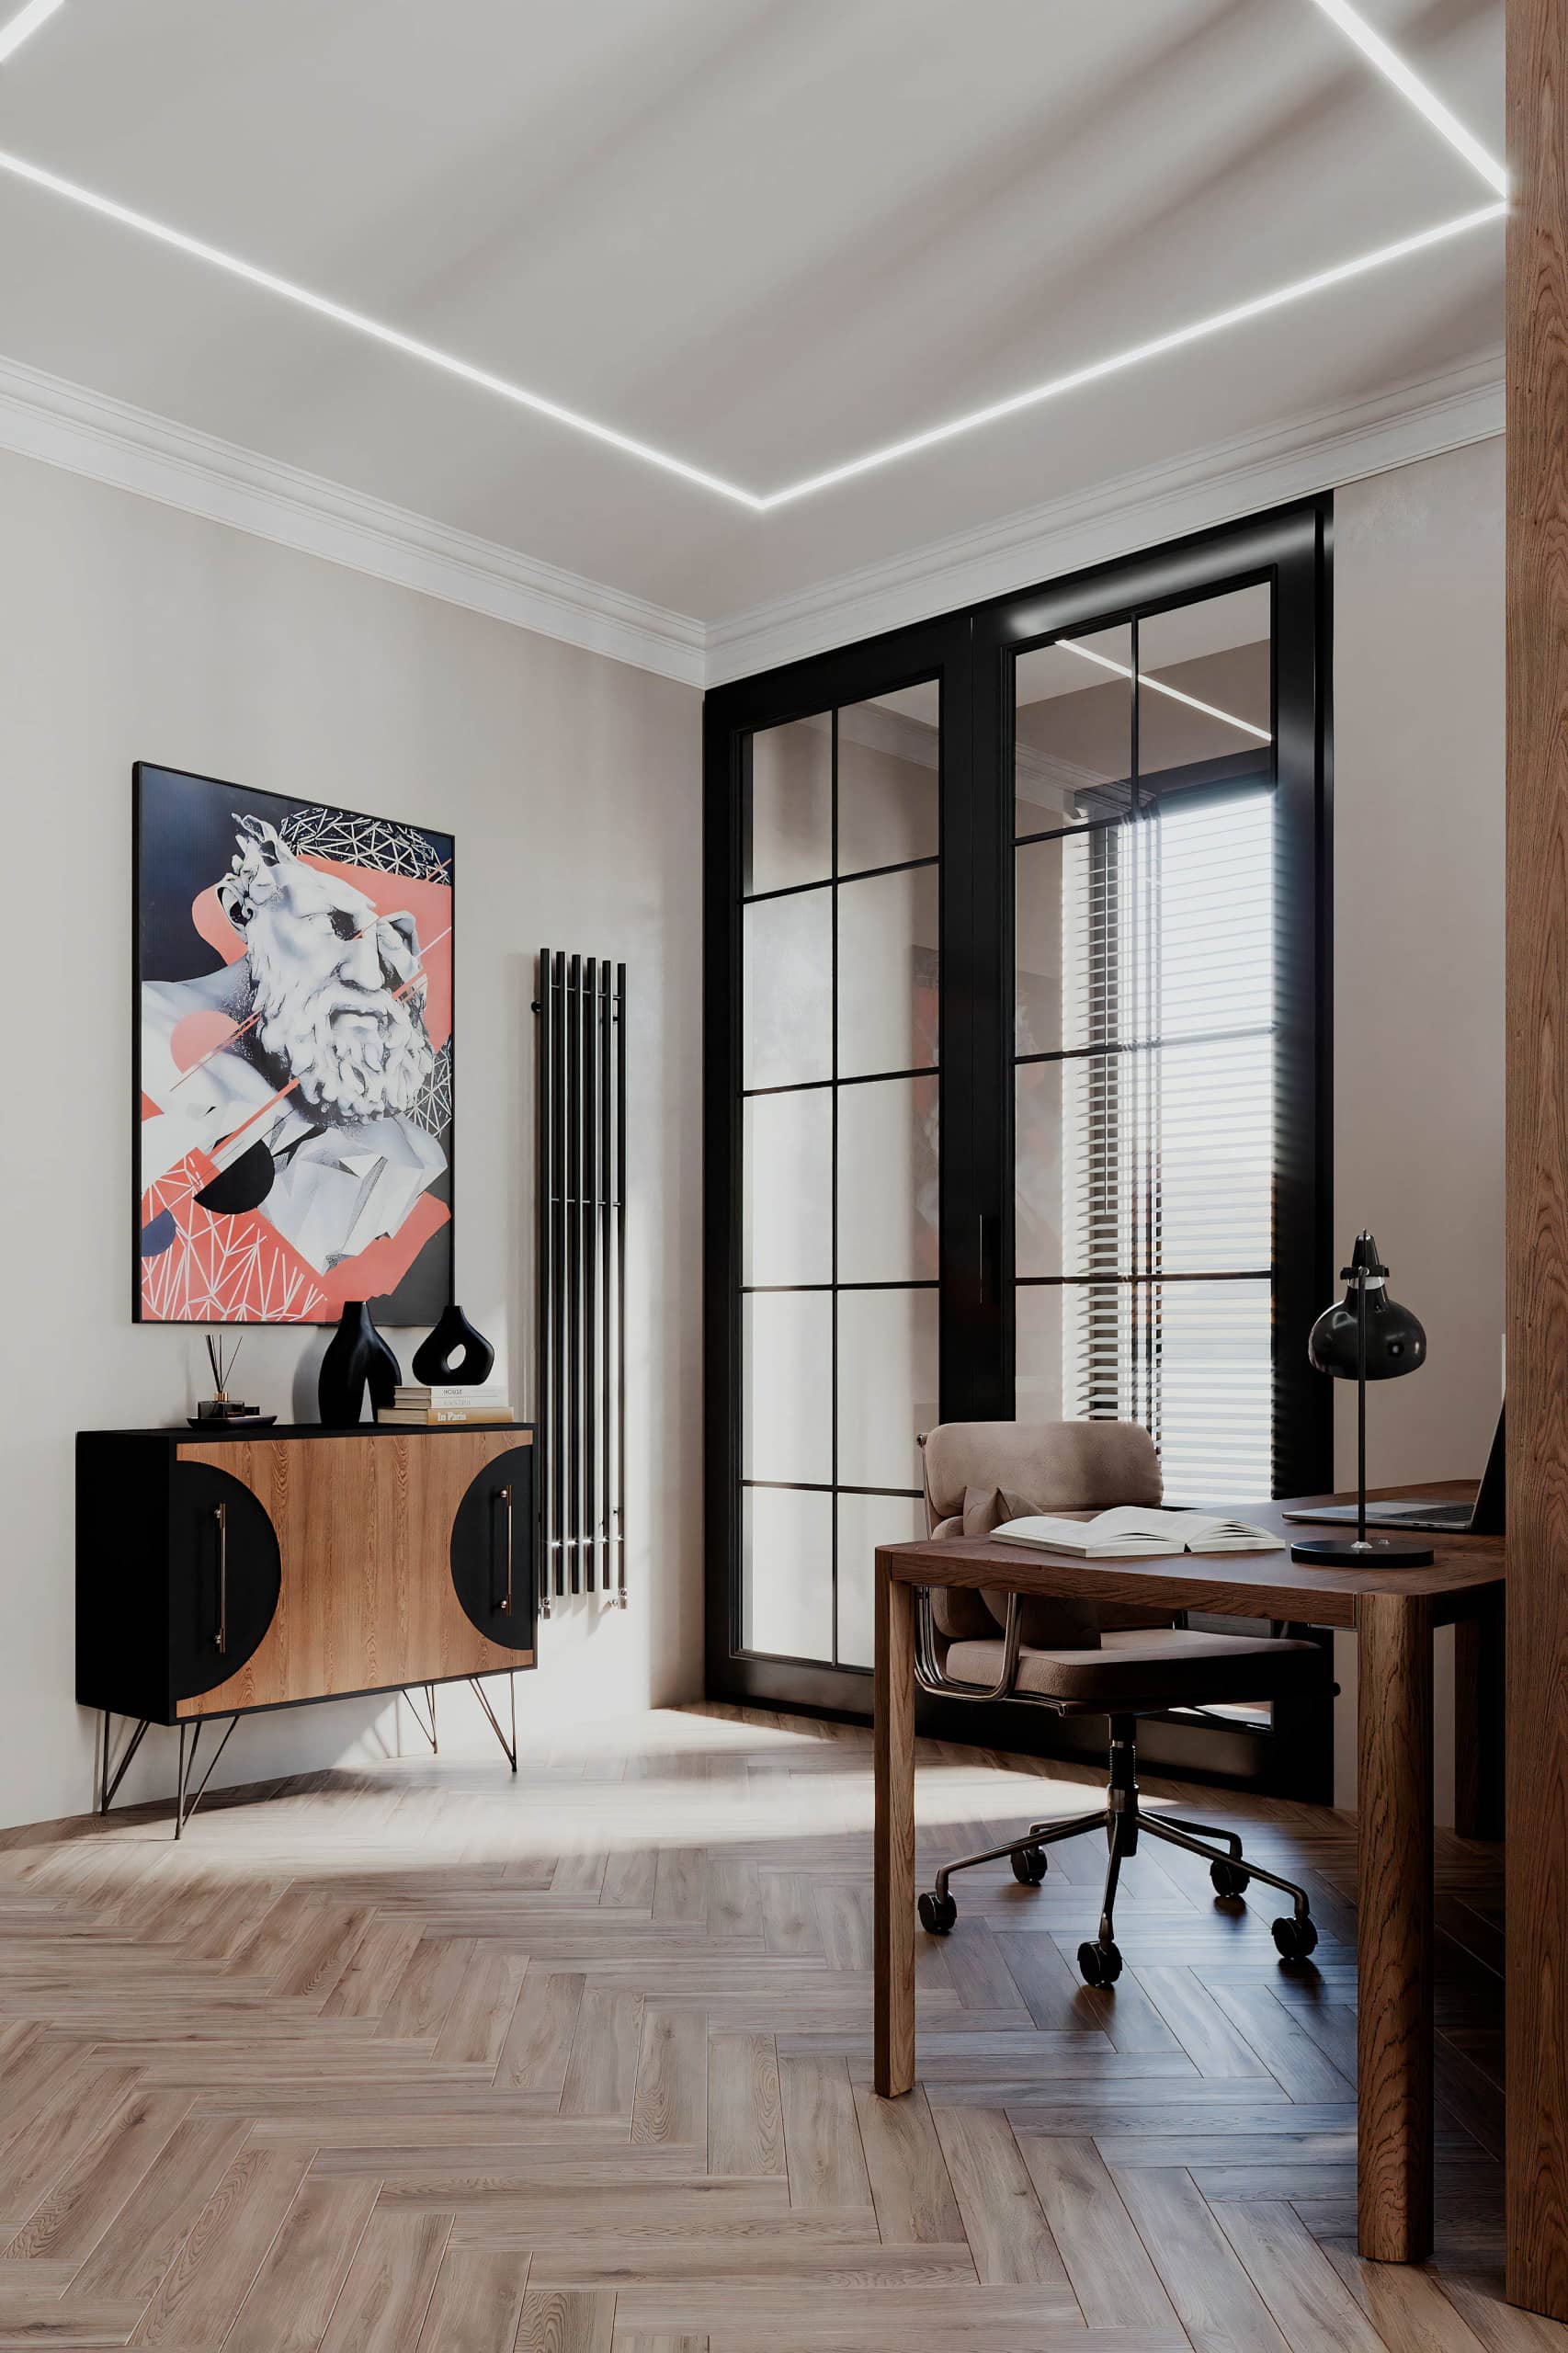 Оформление интерьера гостиной-кухни трехкомнатной квартиры в светло серый цвет в современном стиле. Фото № 67620.